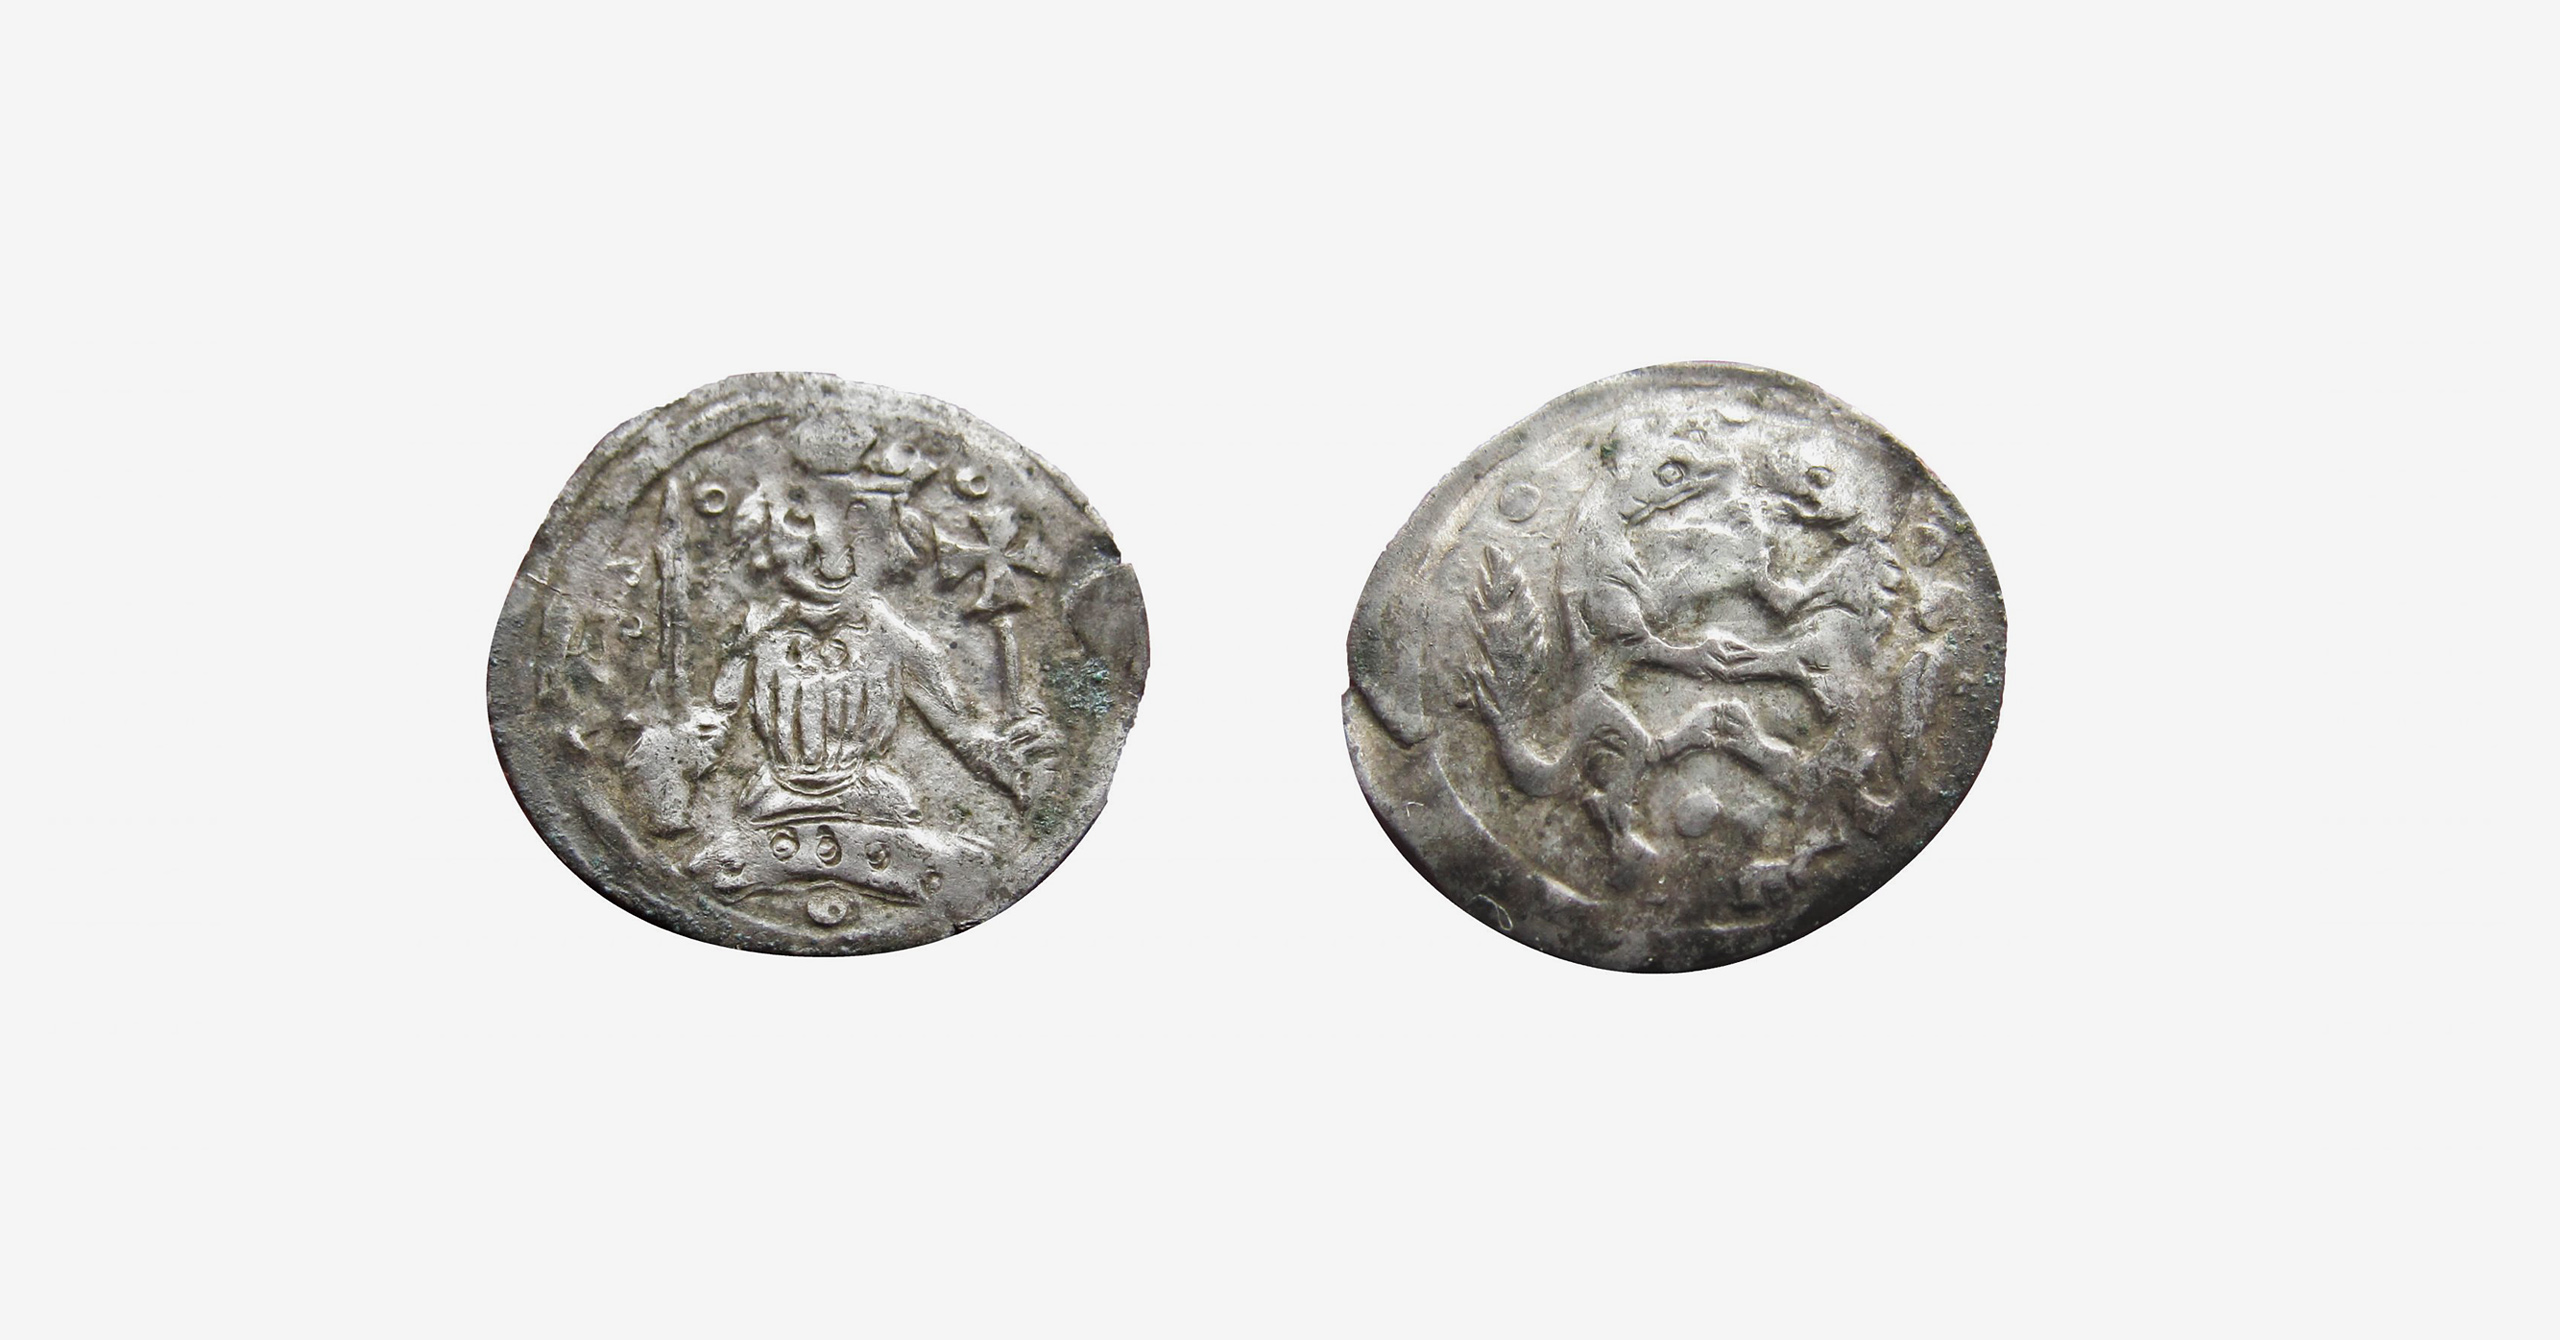 Beszélő ezüstpénzek a késő Árpád-korból